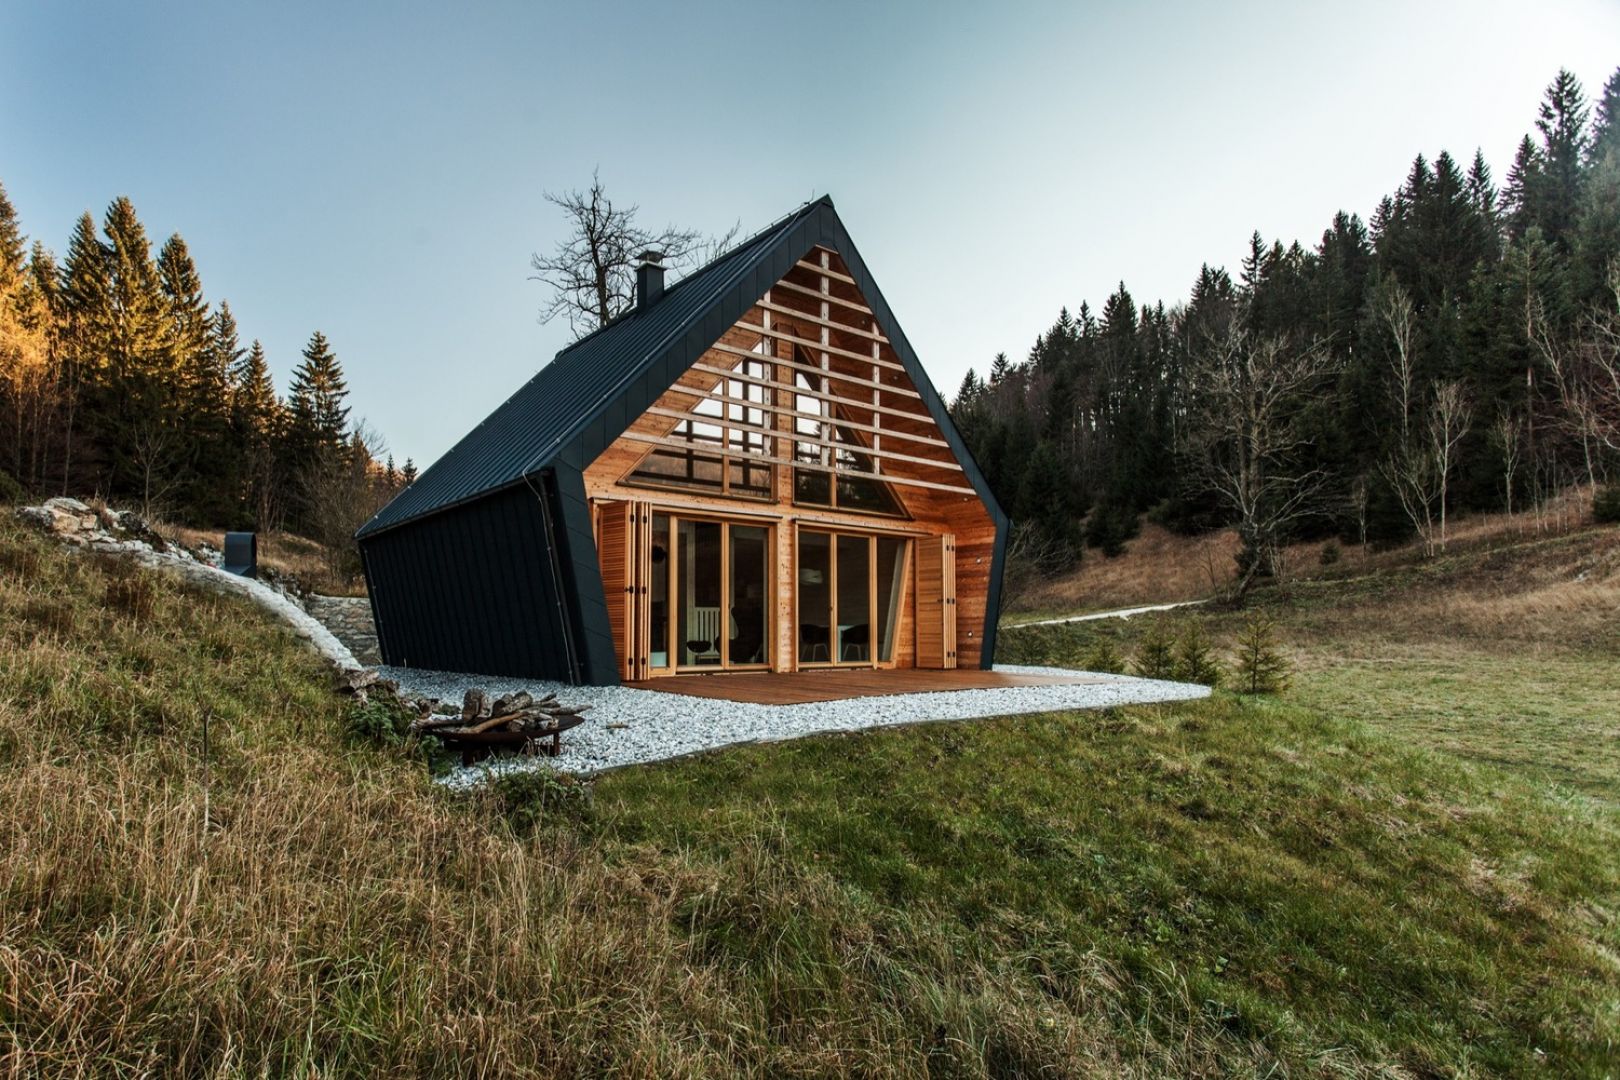 Ta mała, drewniana rezydencja, zaprojektowana przez studio architektoniczne Pikaplus zajęła drugie miejsce w ogólnokrajowym konkursie na najlepszy dom drewniany w Słowenii. Fot. Miha Bratina